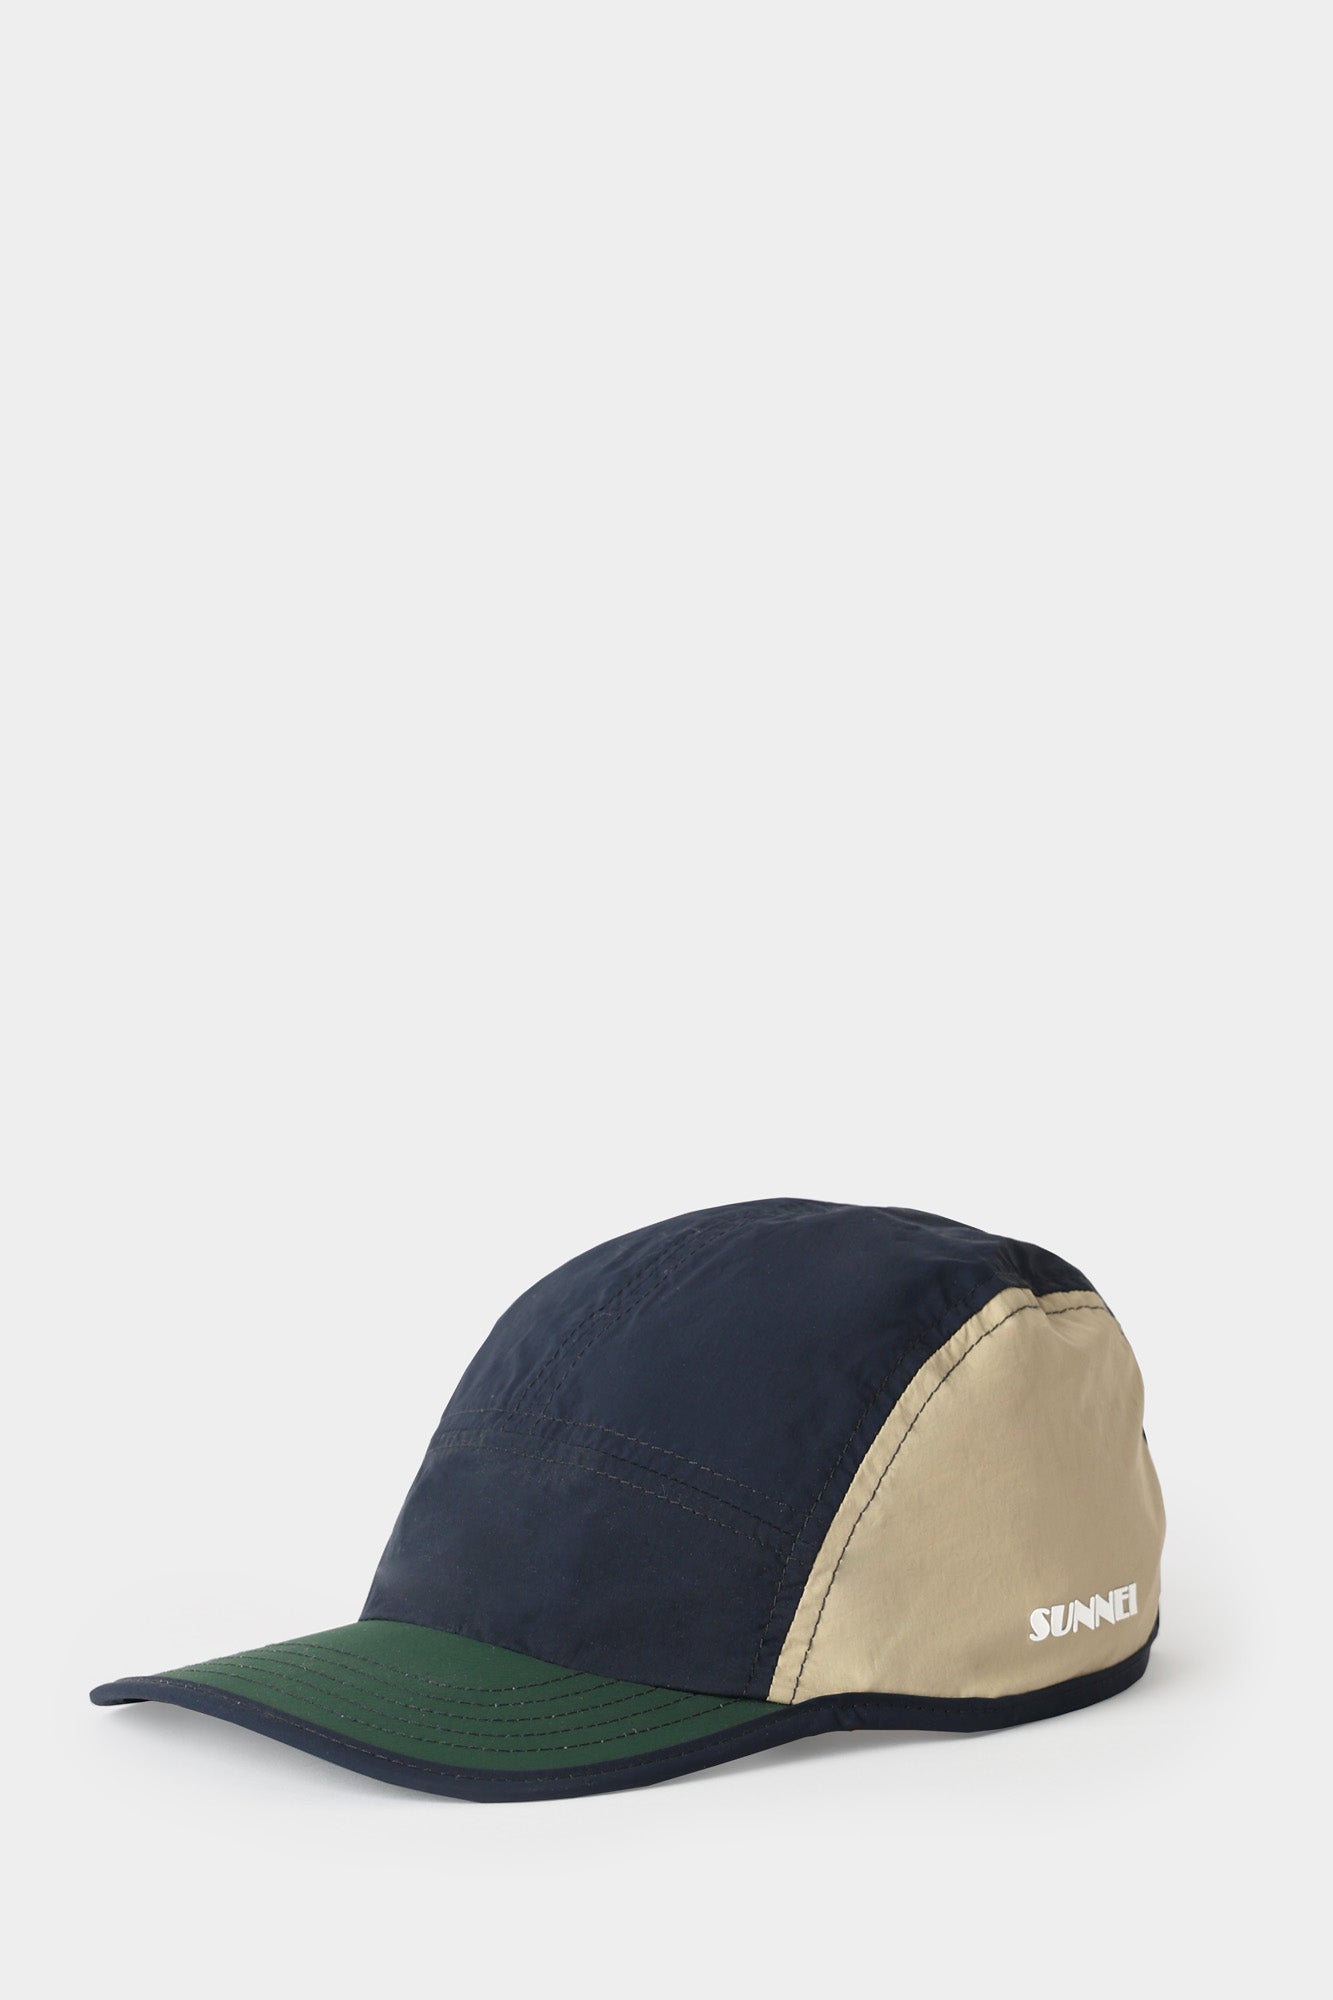 BASEBALL CAP / navy, beige & green